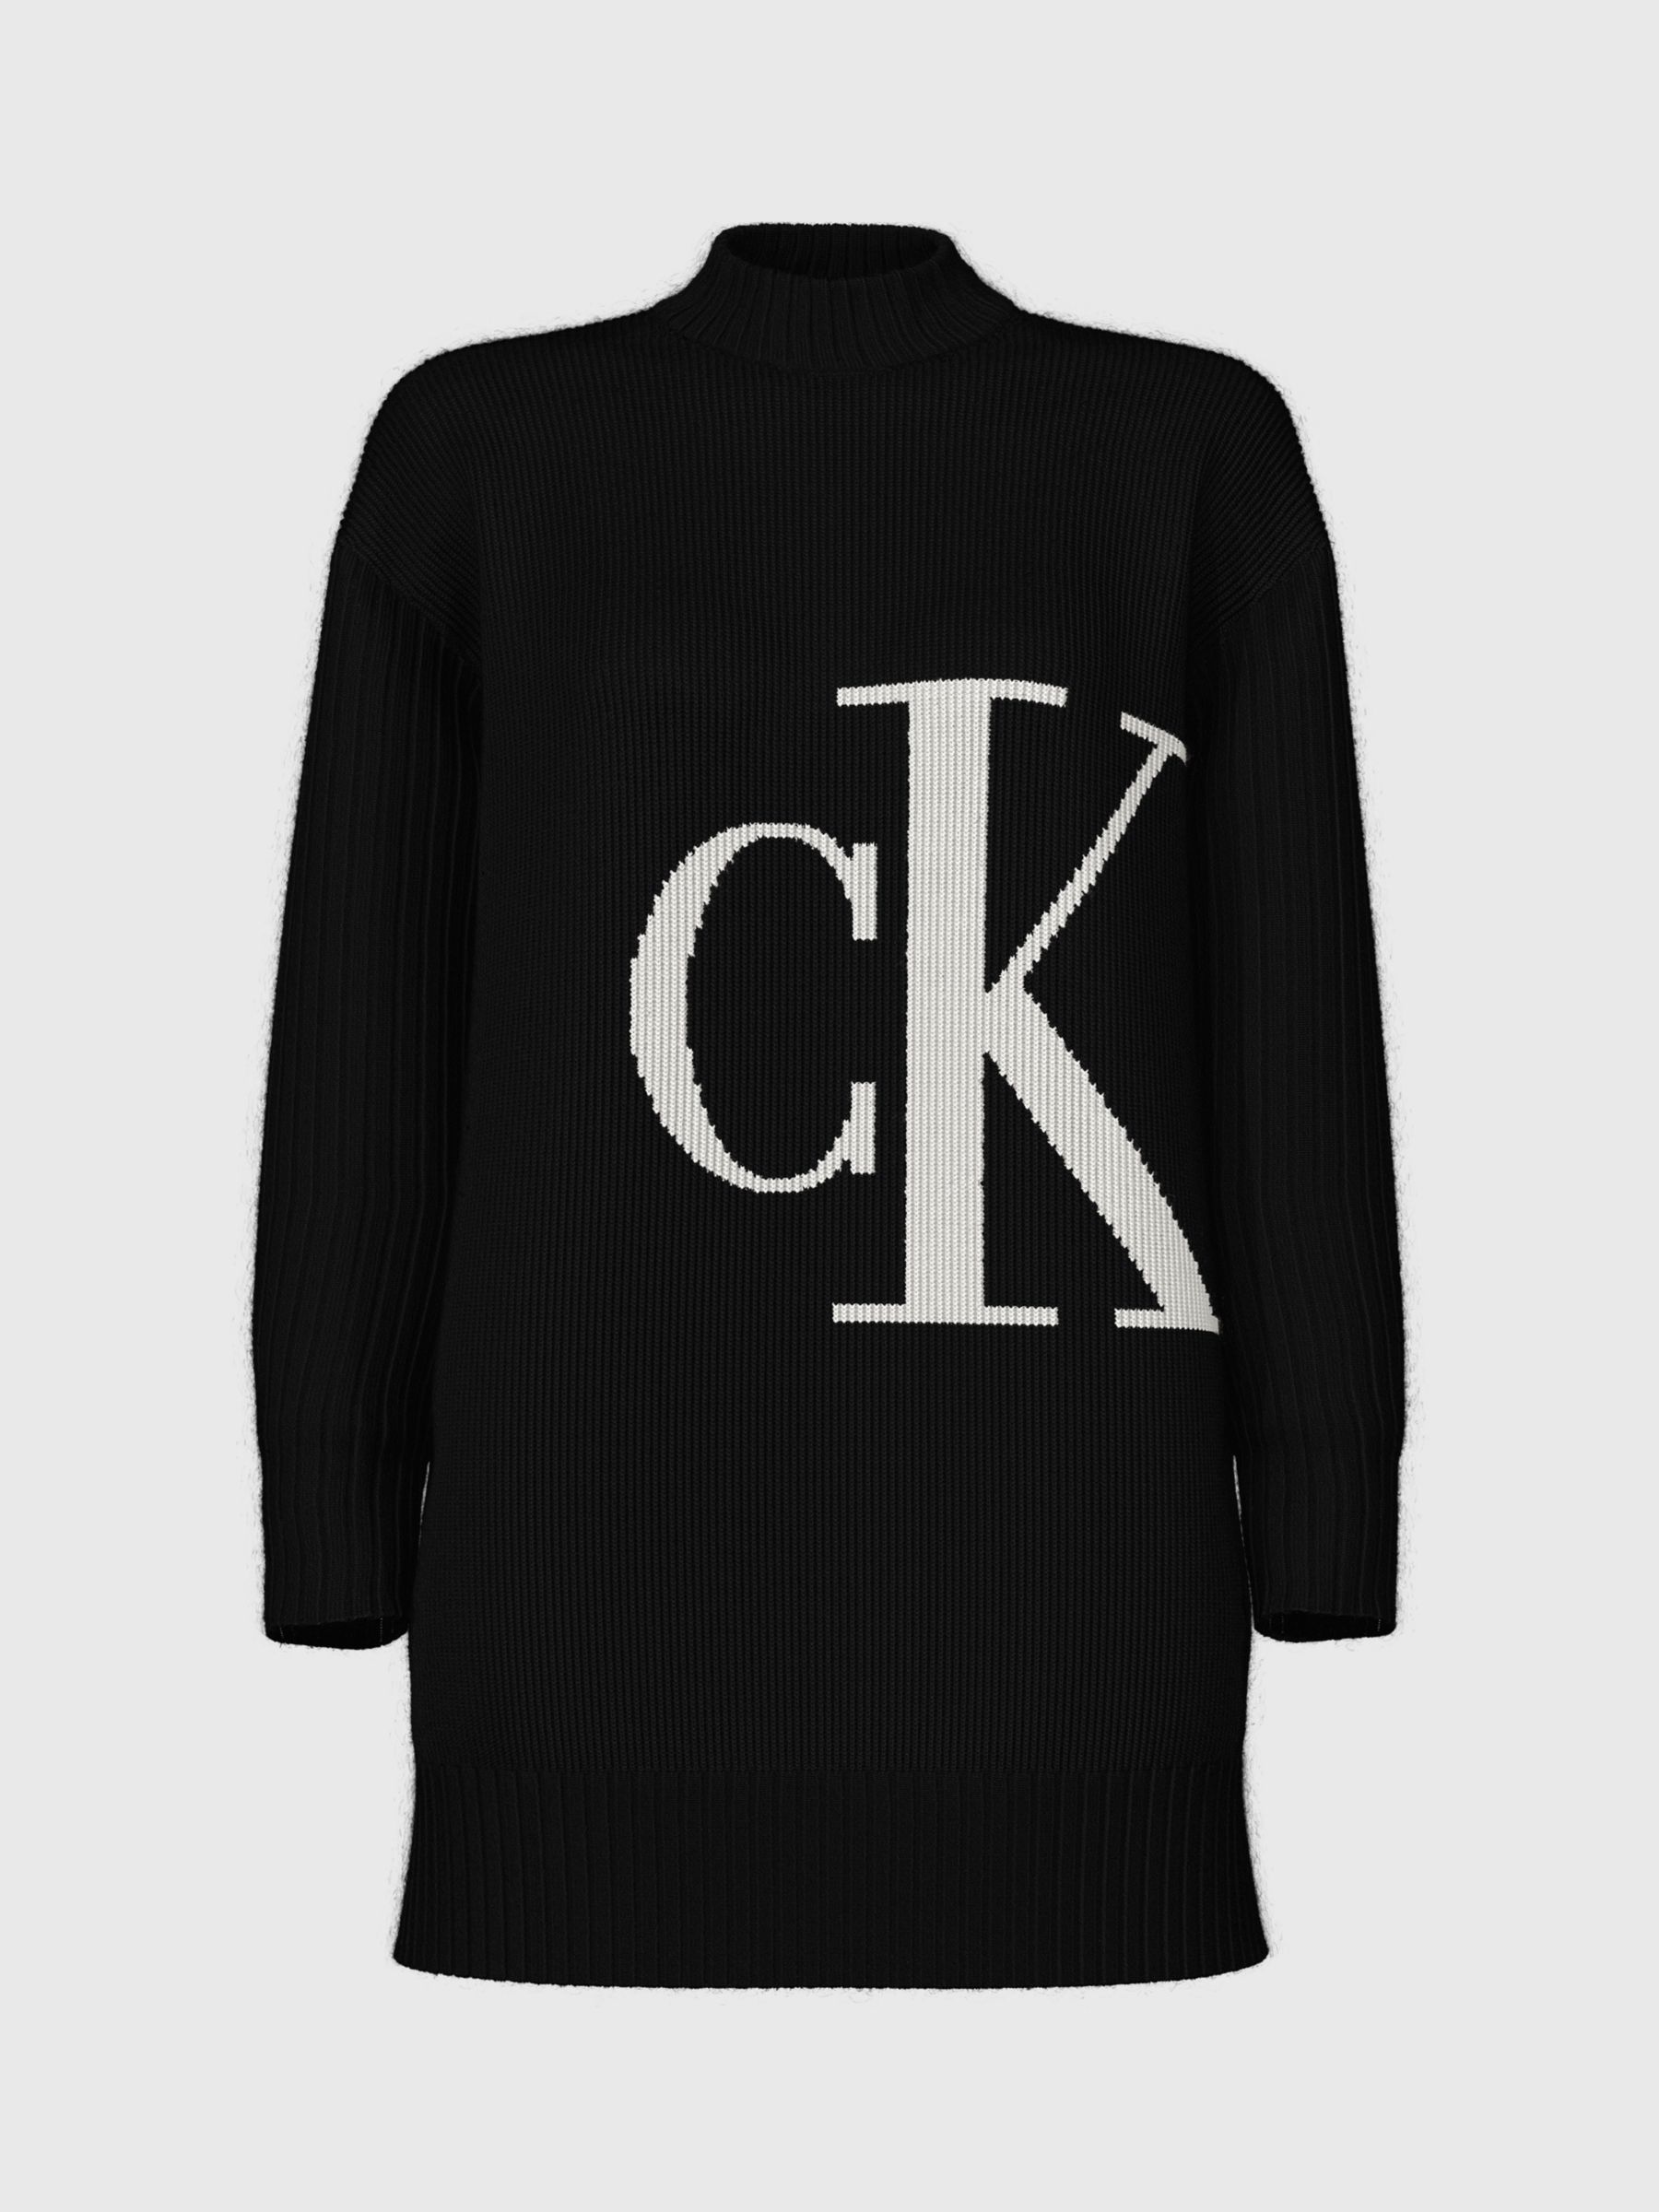 Джемпер с объемным логотипом Calvin Klein, черно-белый